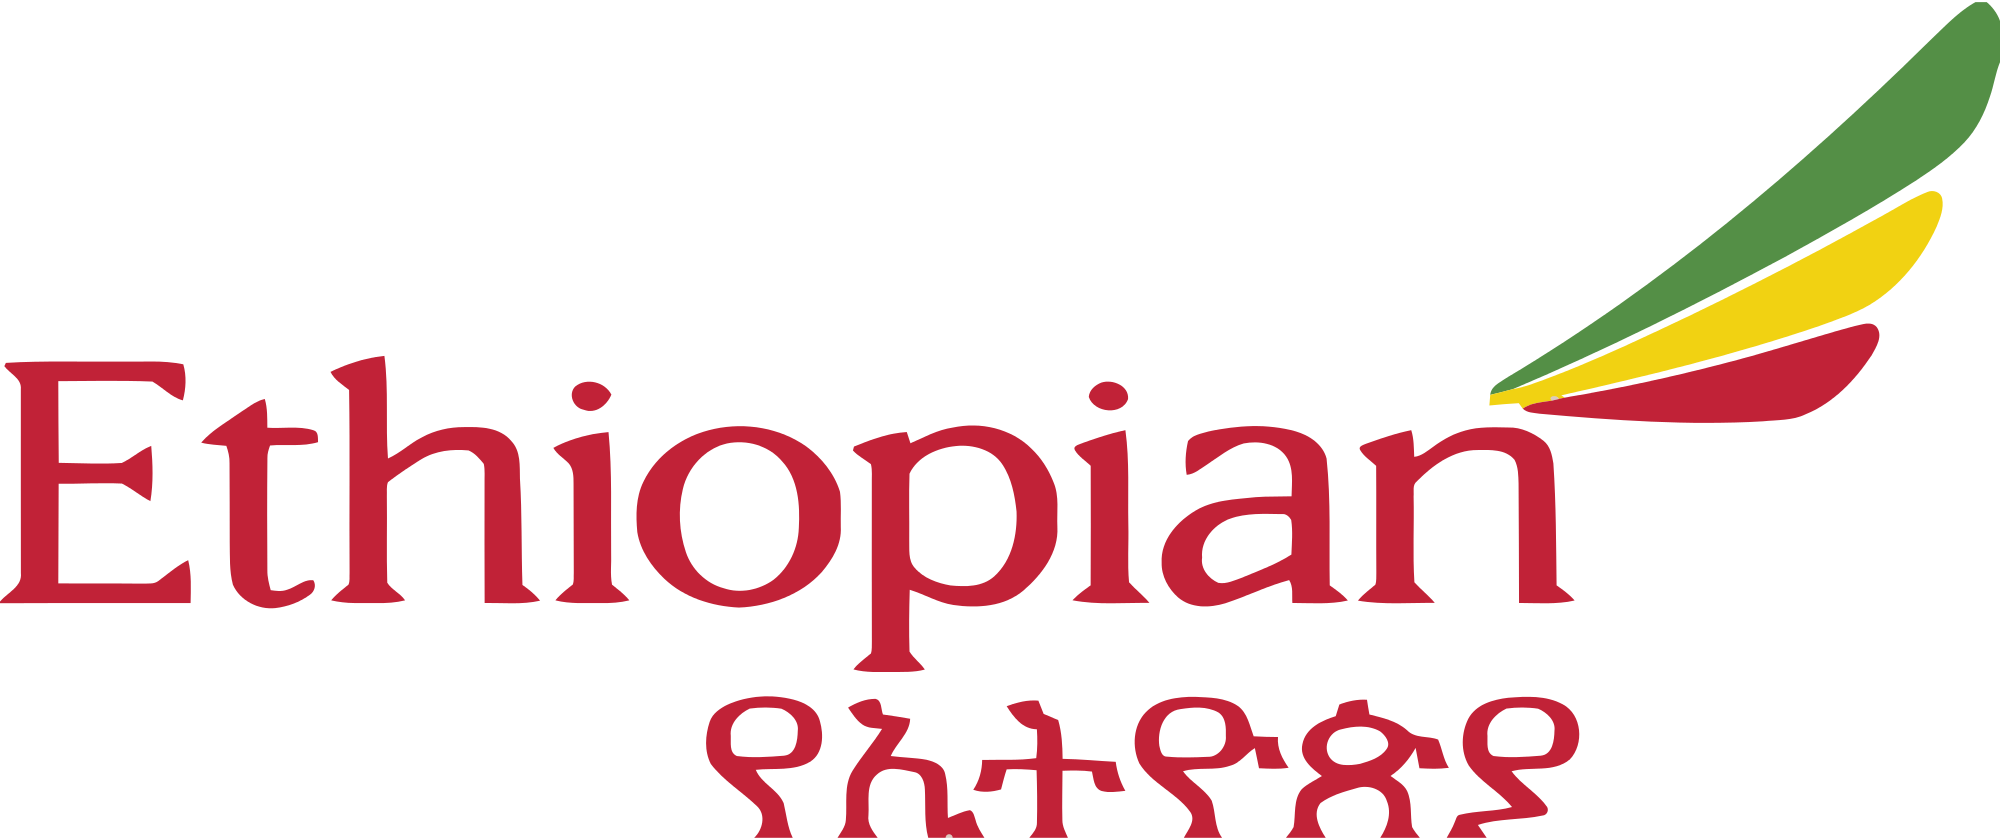 Télephone information entreprise  Ethiopian Airlines